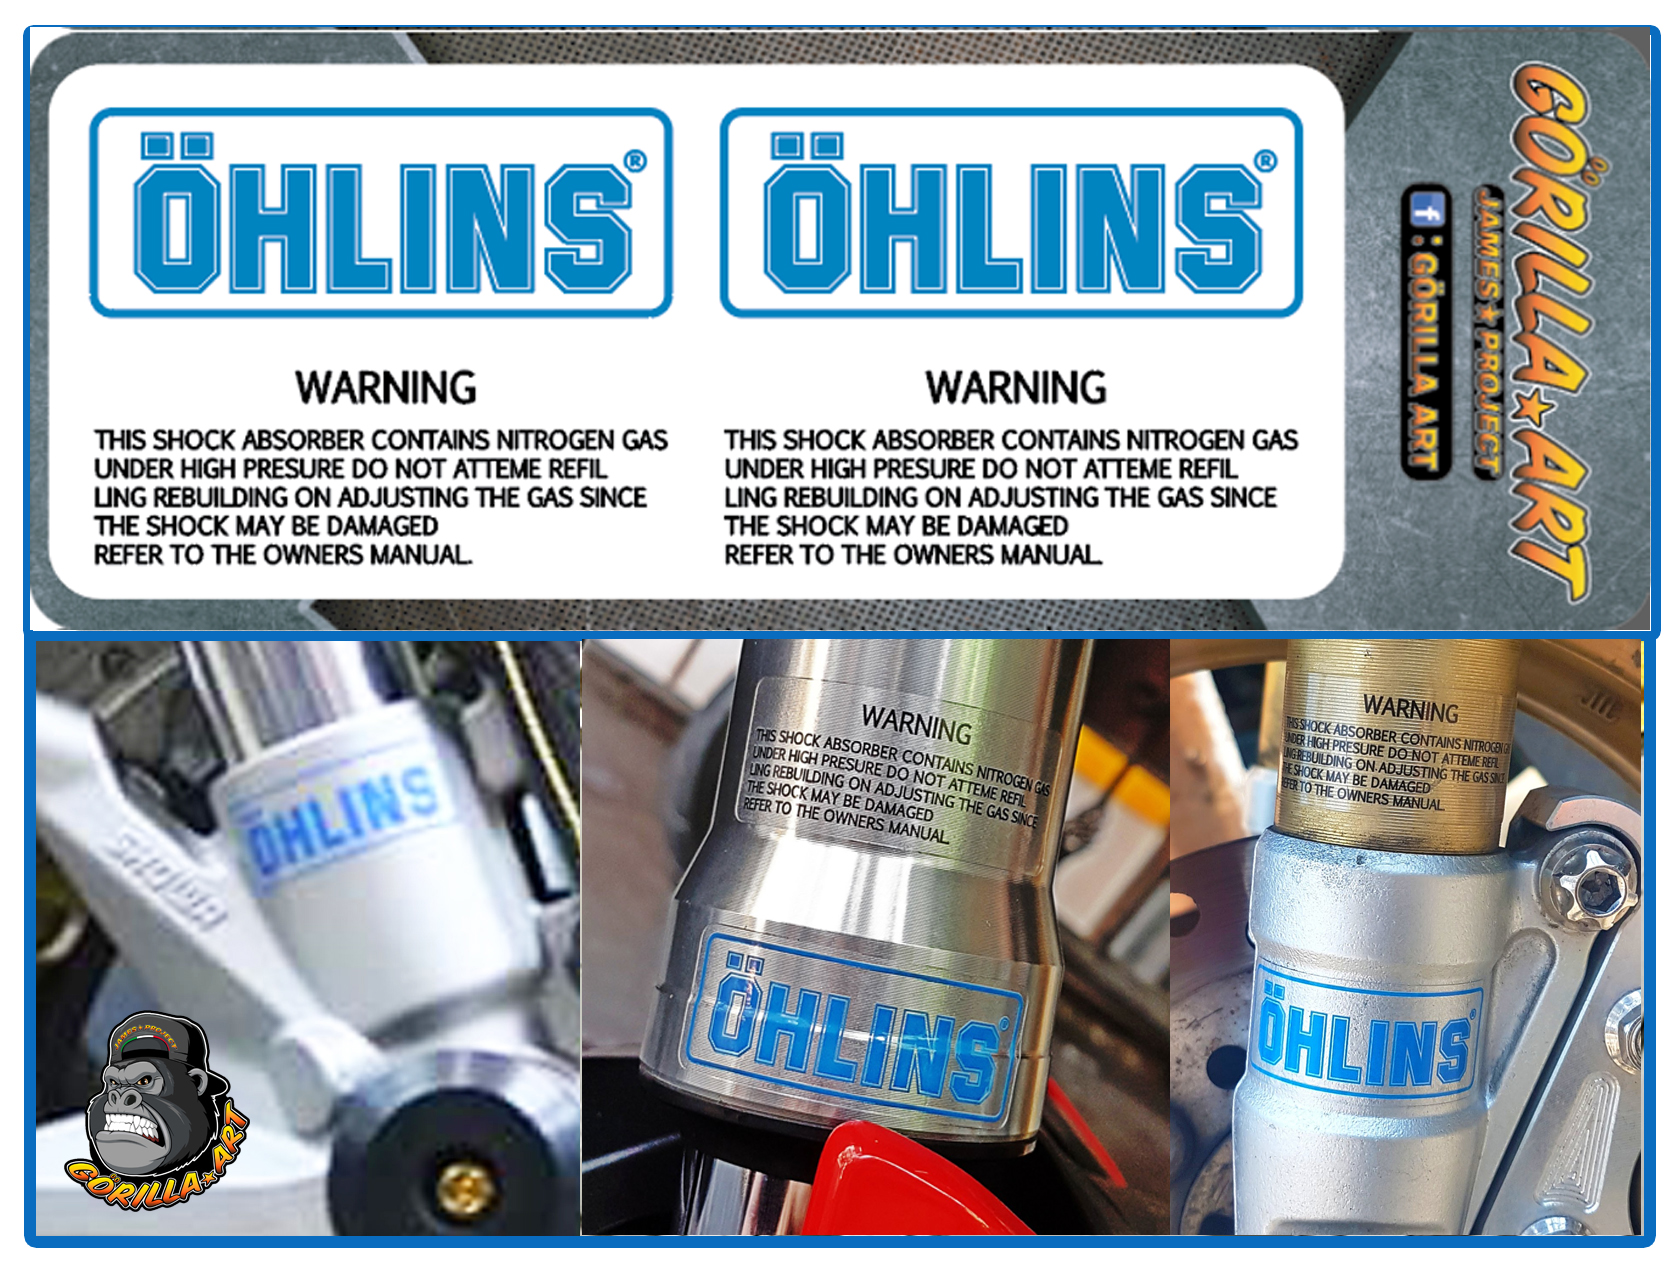 สติ๊กเกอร์ติด โช๊ค Ohlins v-1 Sticker เกรดพรีเมี่ยม ( พื้นใสอักษรฟ้า ) / Motorcycle Sticker shock absorber Ohlins